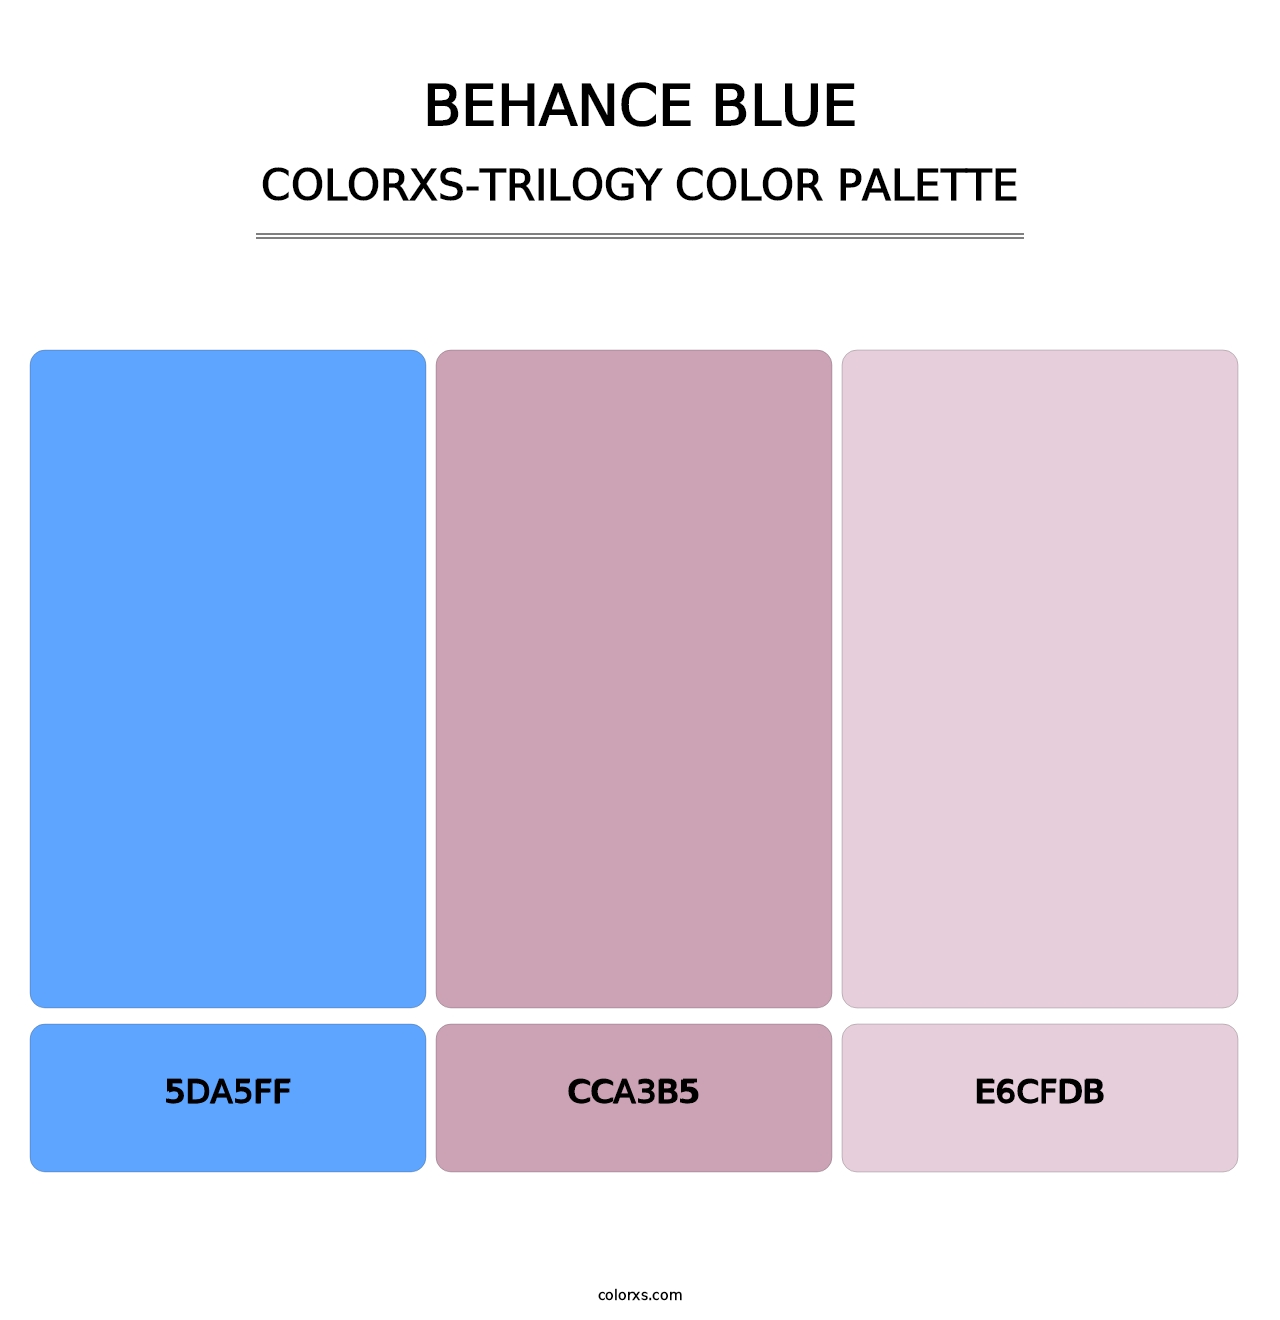 Behance Blue - Colorxs Trilogy Palette